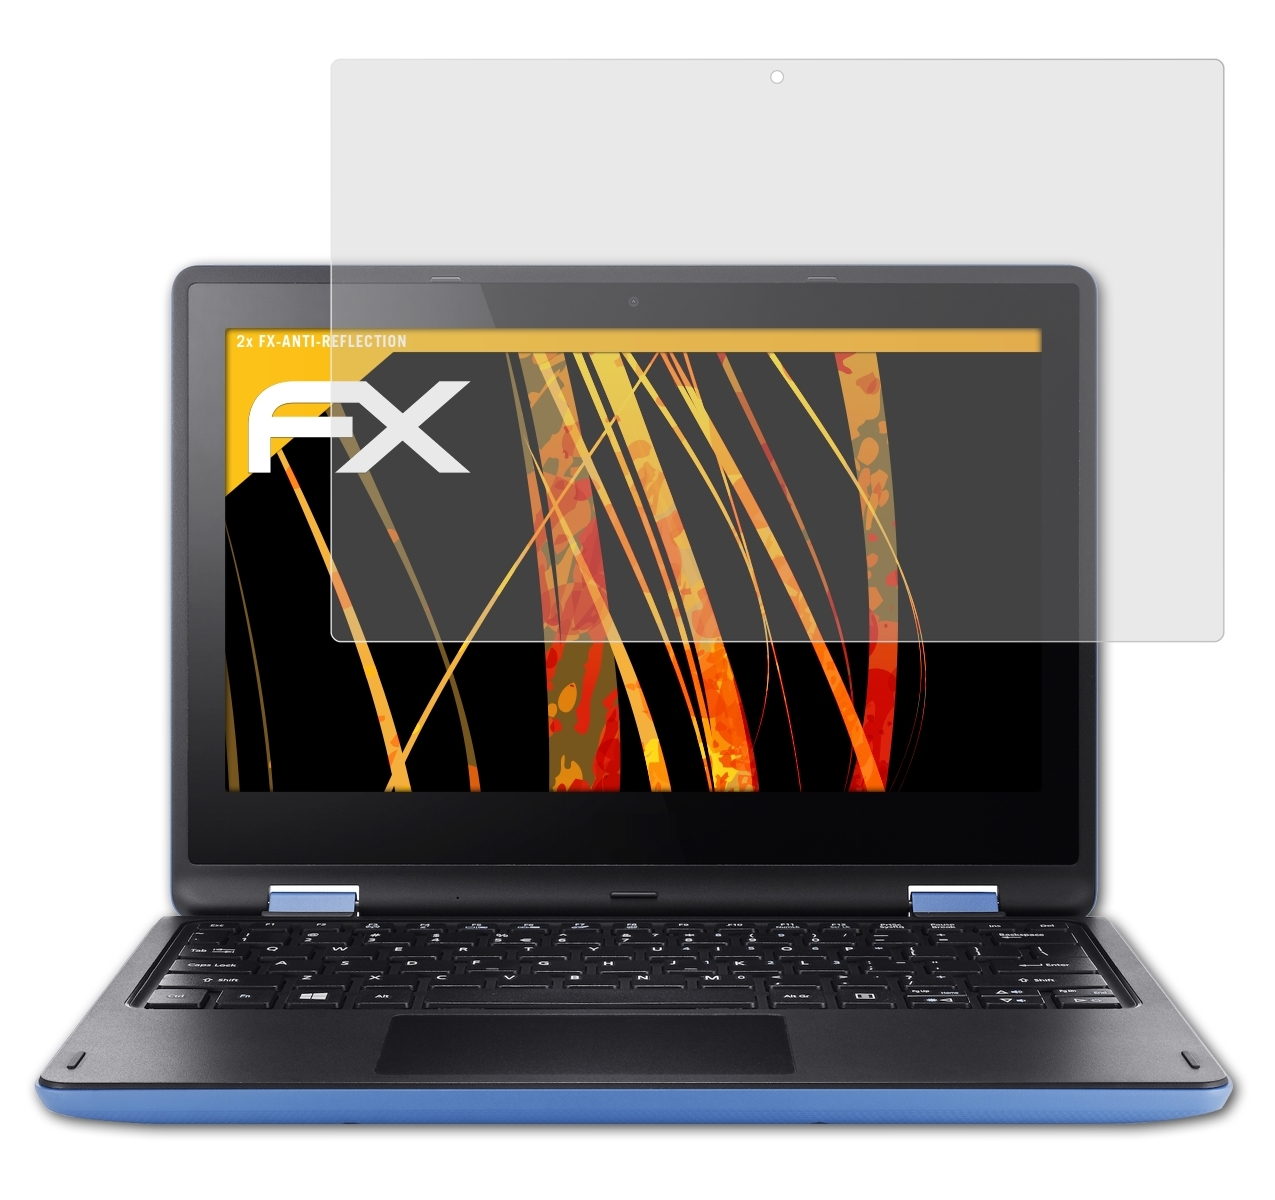 Acer 2x ATFOLIX Aspire R11) FX-Antireflex Displayschutz(für